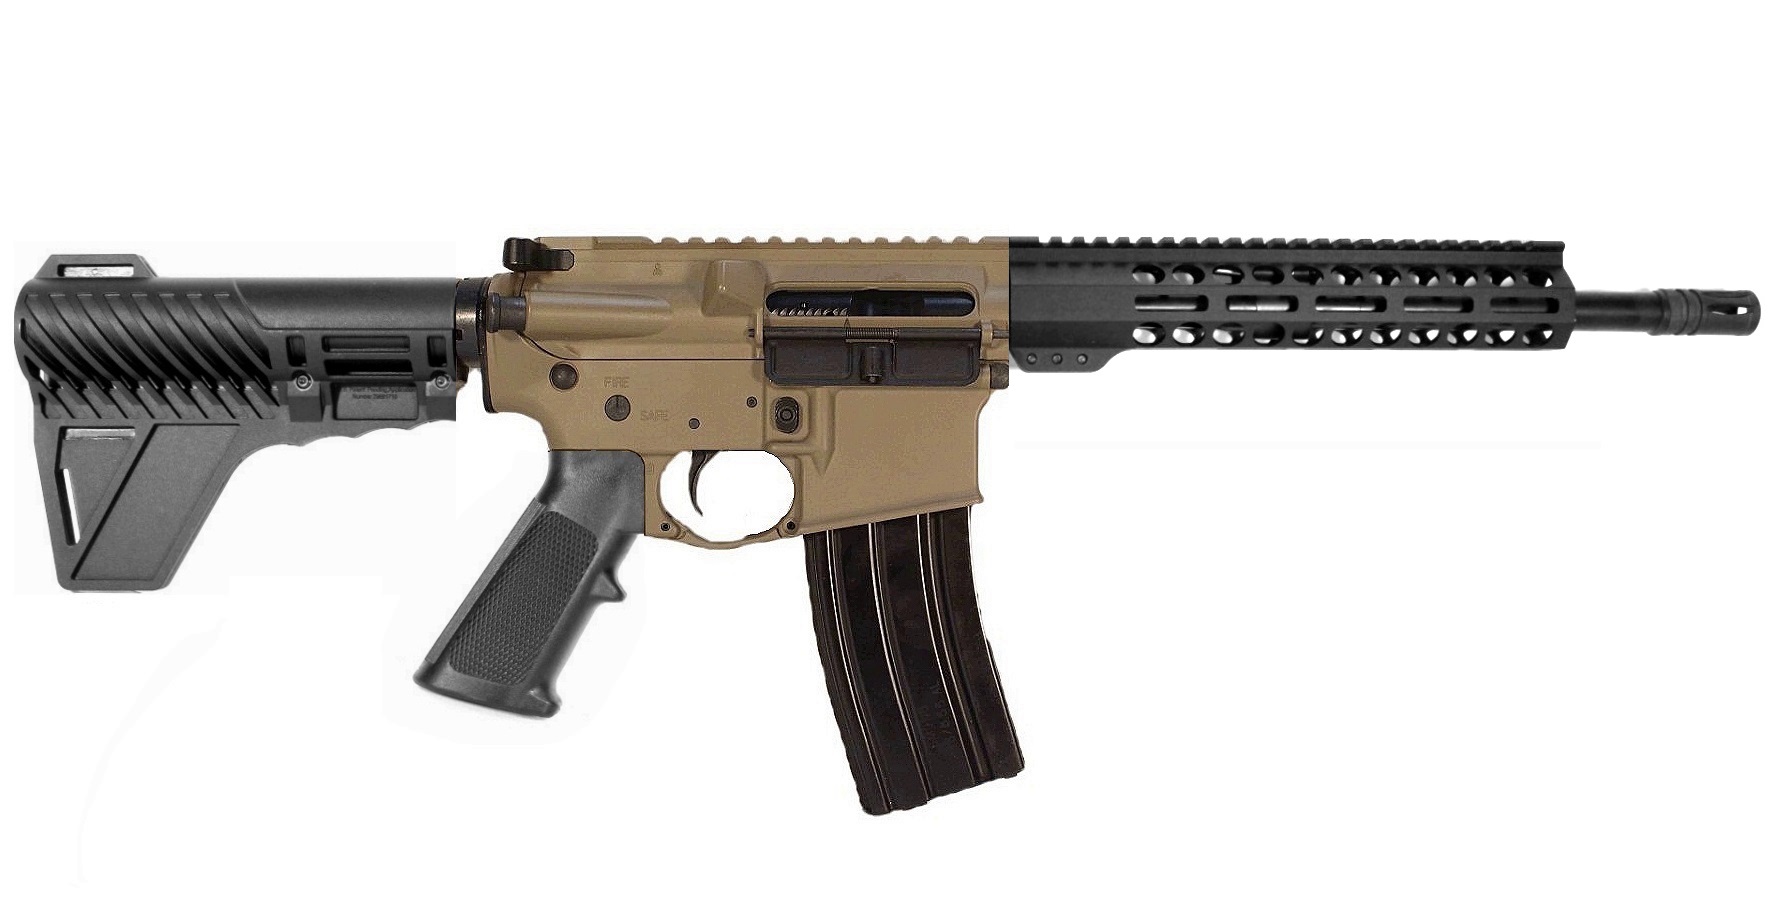 12.5 inch 300BLK AR Pistol 2 Tone FDE/BLK